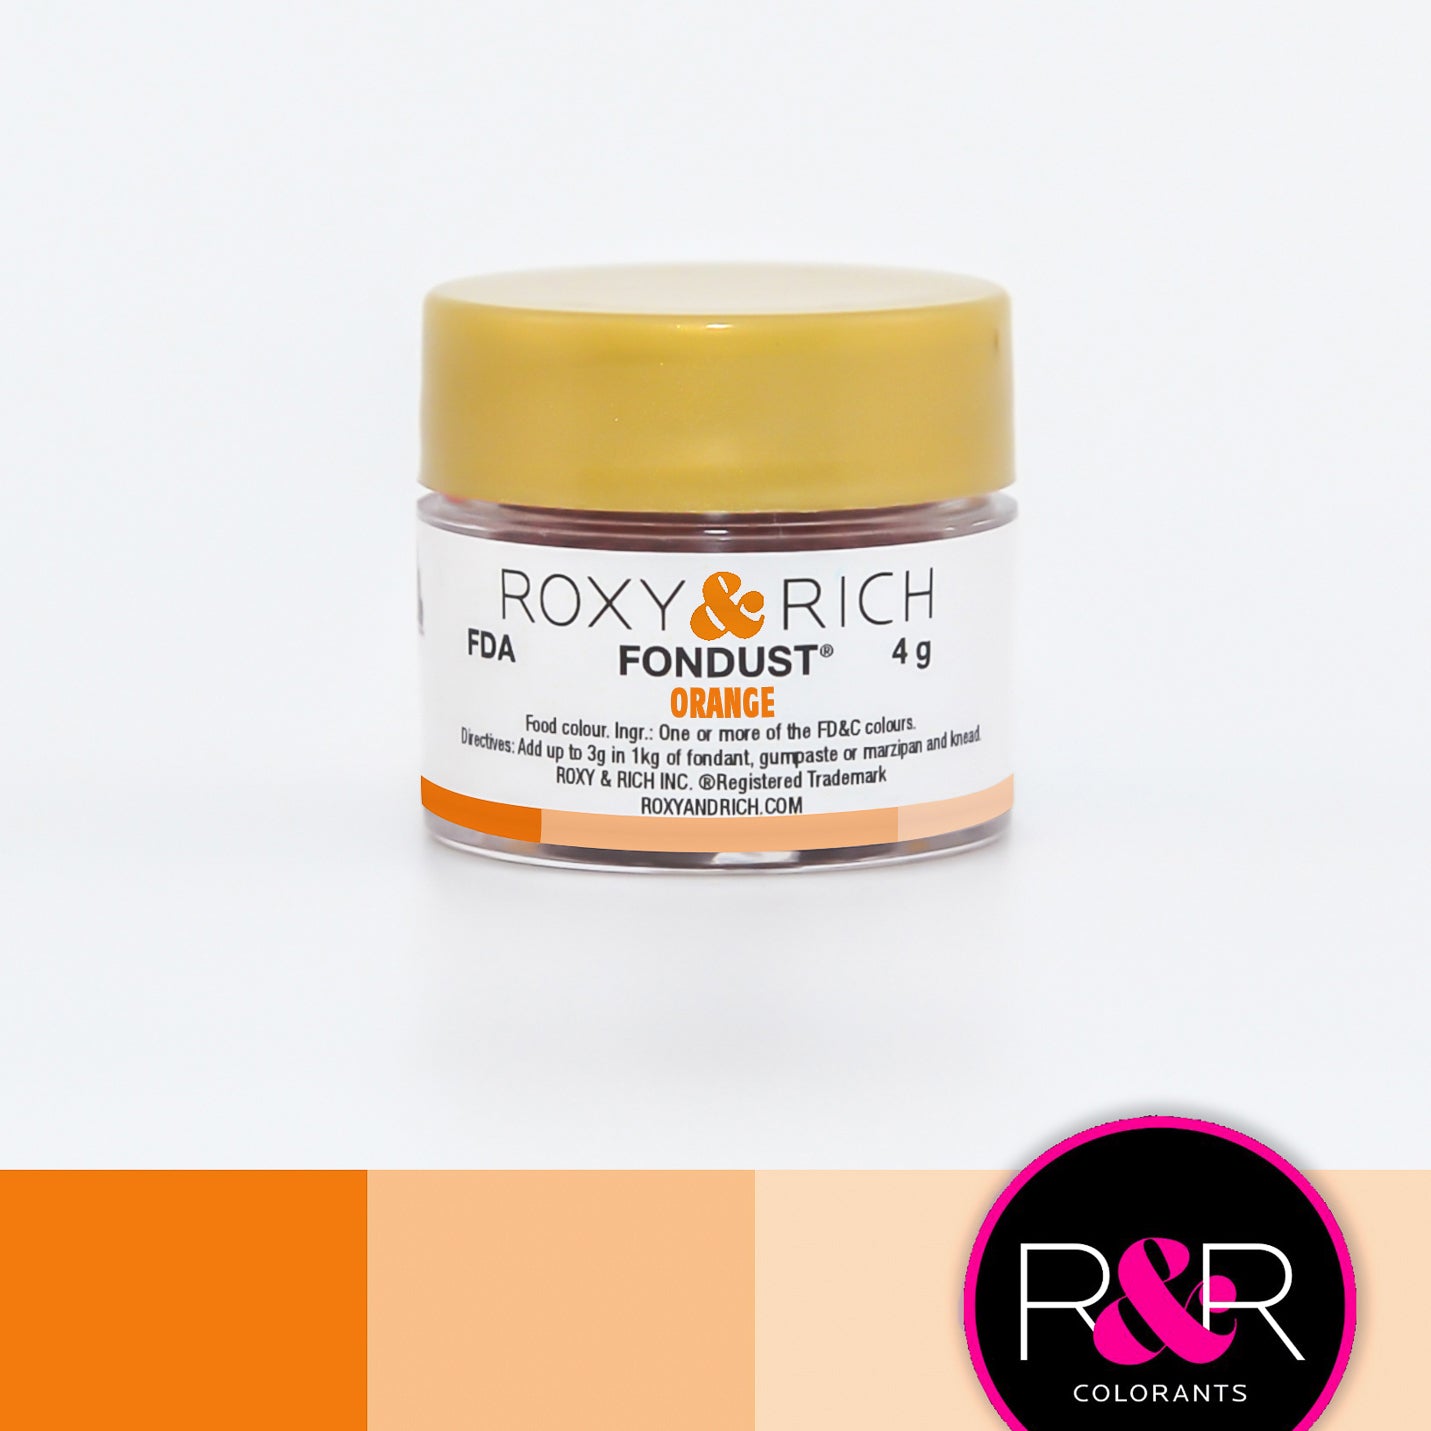 Colorant FONDUST Orange 4g   - Roxy & Rich - Colorant alimentaire hydrosoluble - F4-007